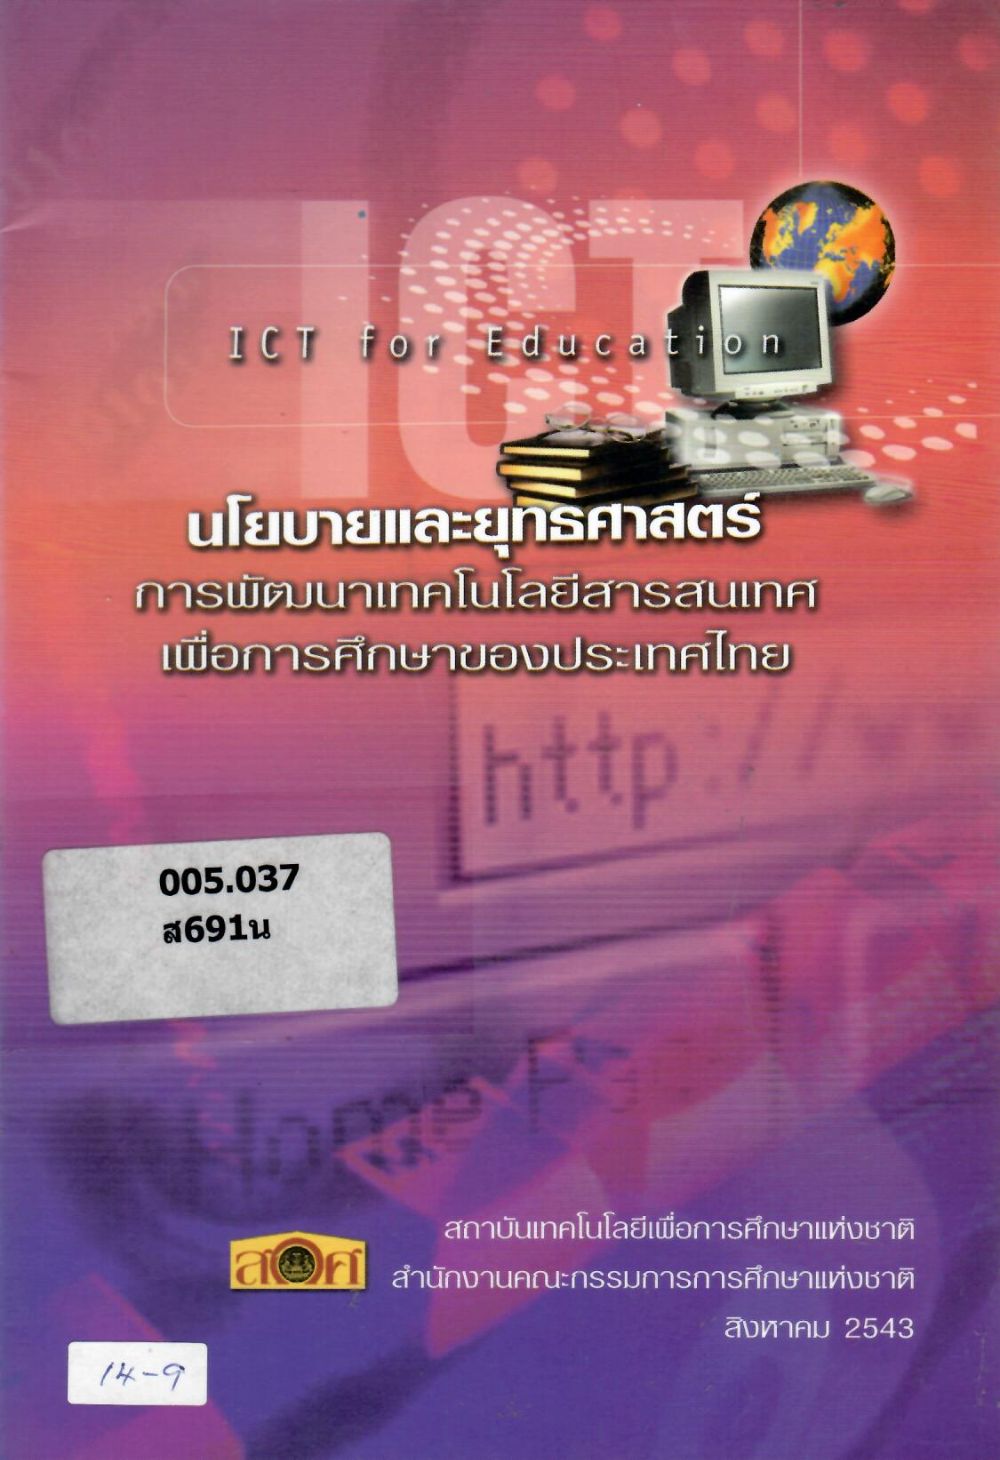 นโยบายและยุทธศาสตร์การพัฒนาเทคโนโลยีสารสนเทศเพื่อการศึกษาของประเทศไทย/ สำนักงานคณะกรรมการการศึกษาแห่งชาติ